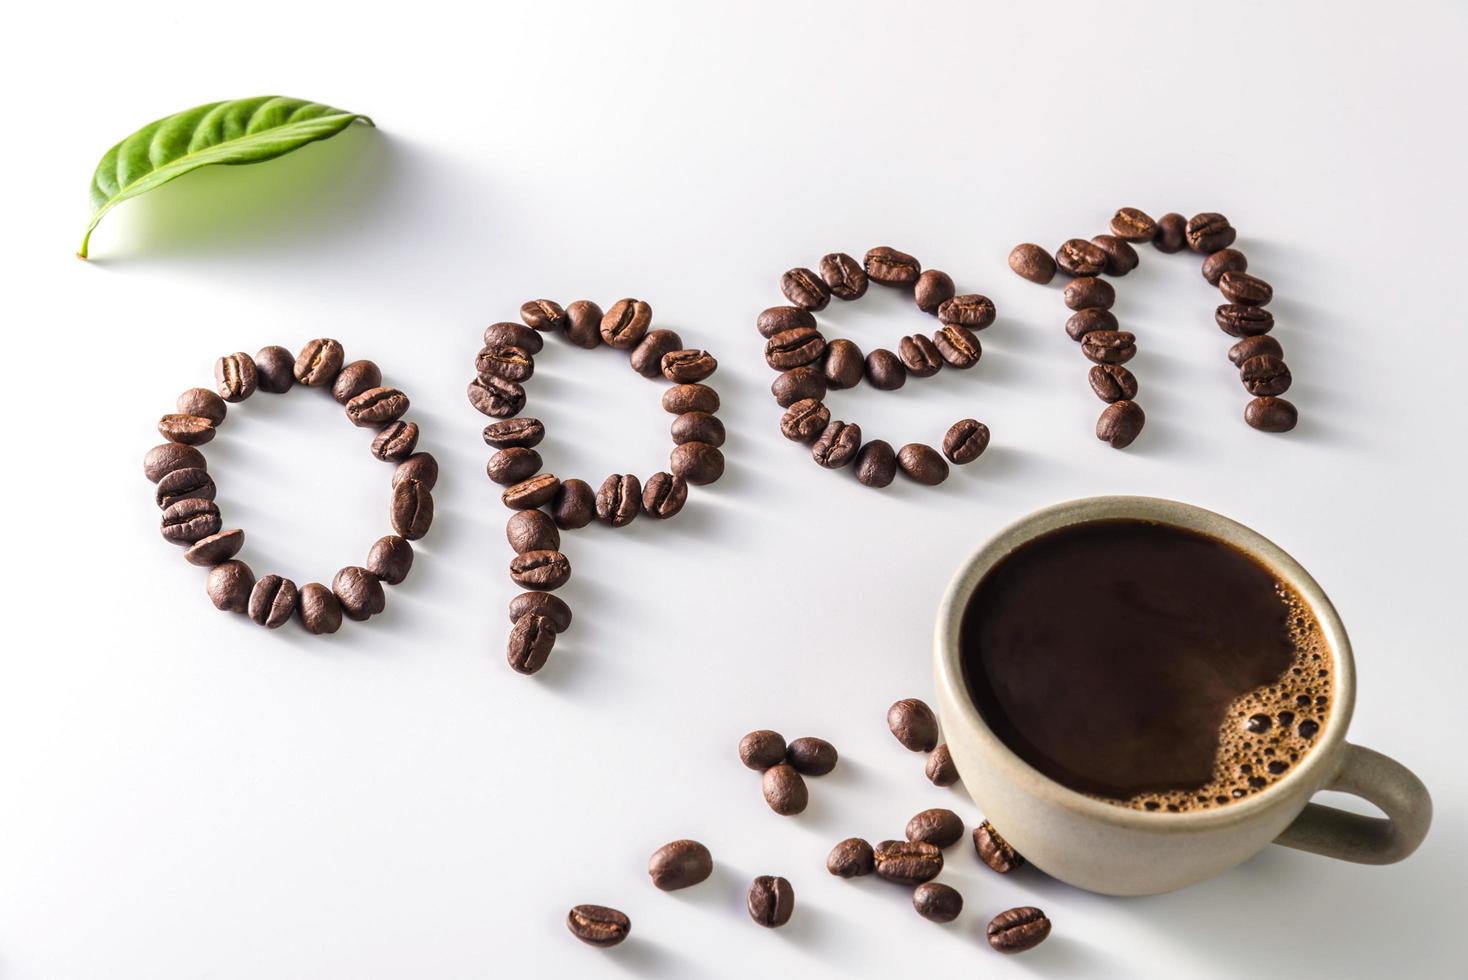 xícara de café e grãos de café em fundo branco com texto aberto feito de grãos de café foto